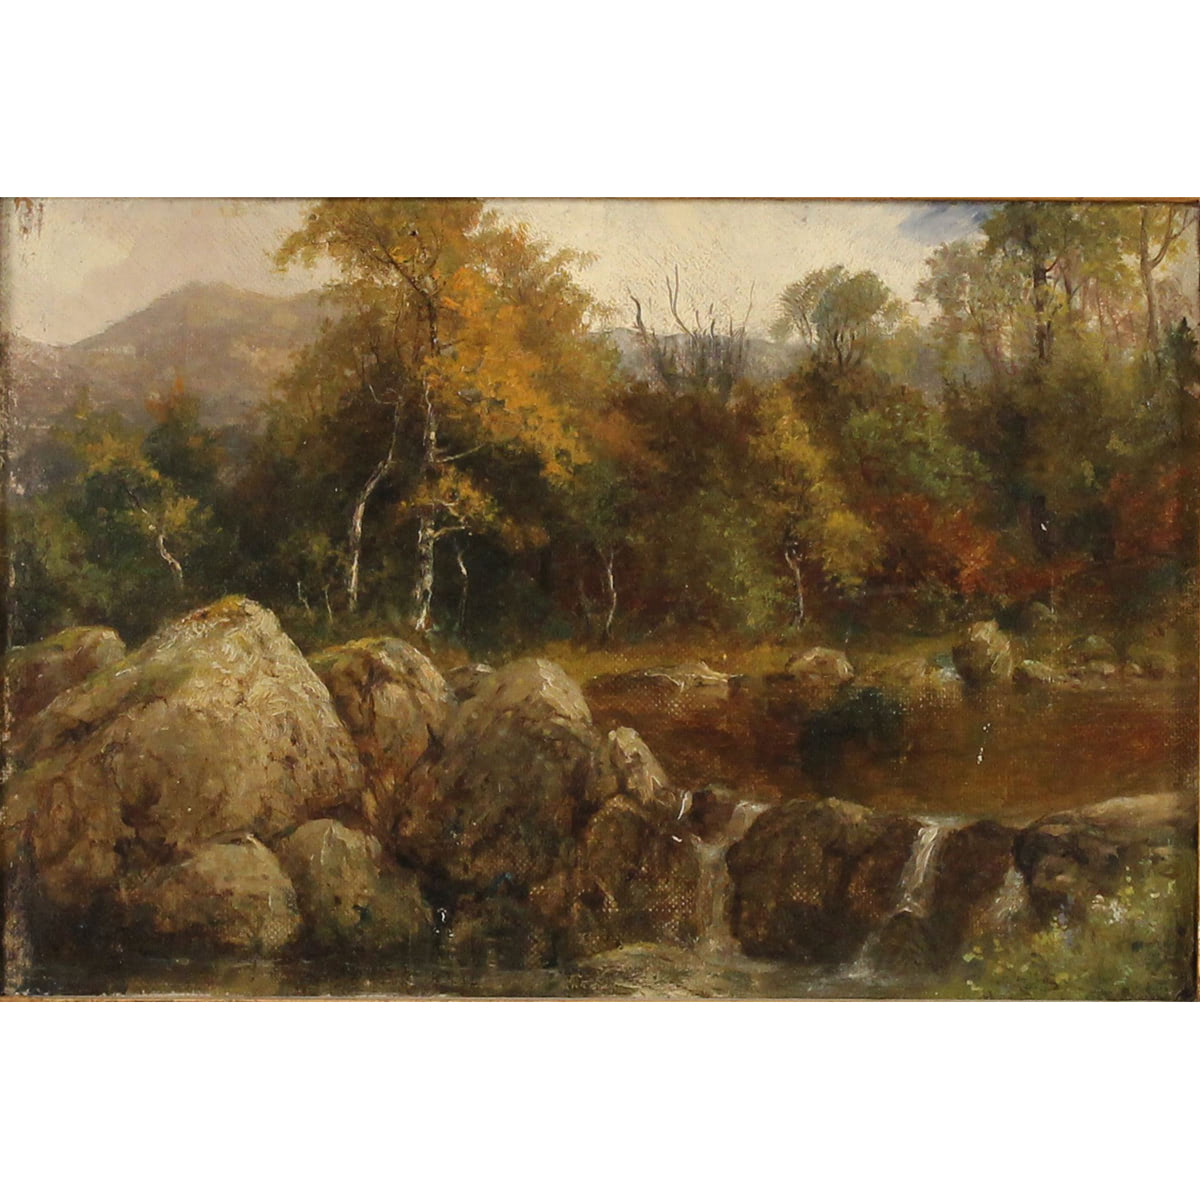 Scuola inglese fine secolo XIX "Paesaggio roccioso" - English school, late 19th century "Rocky landscape"